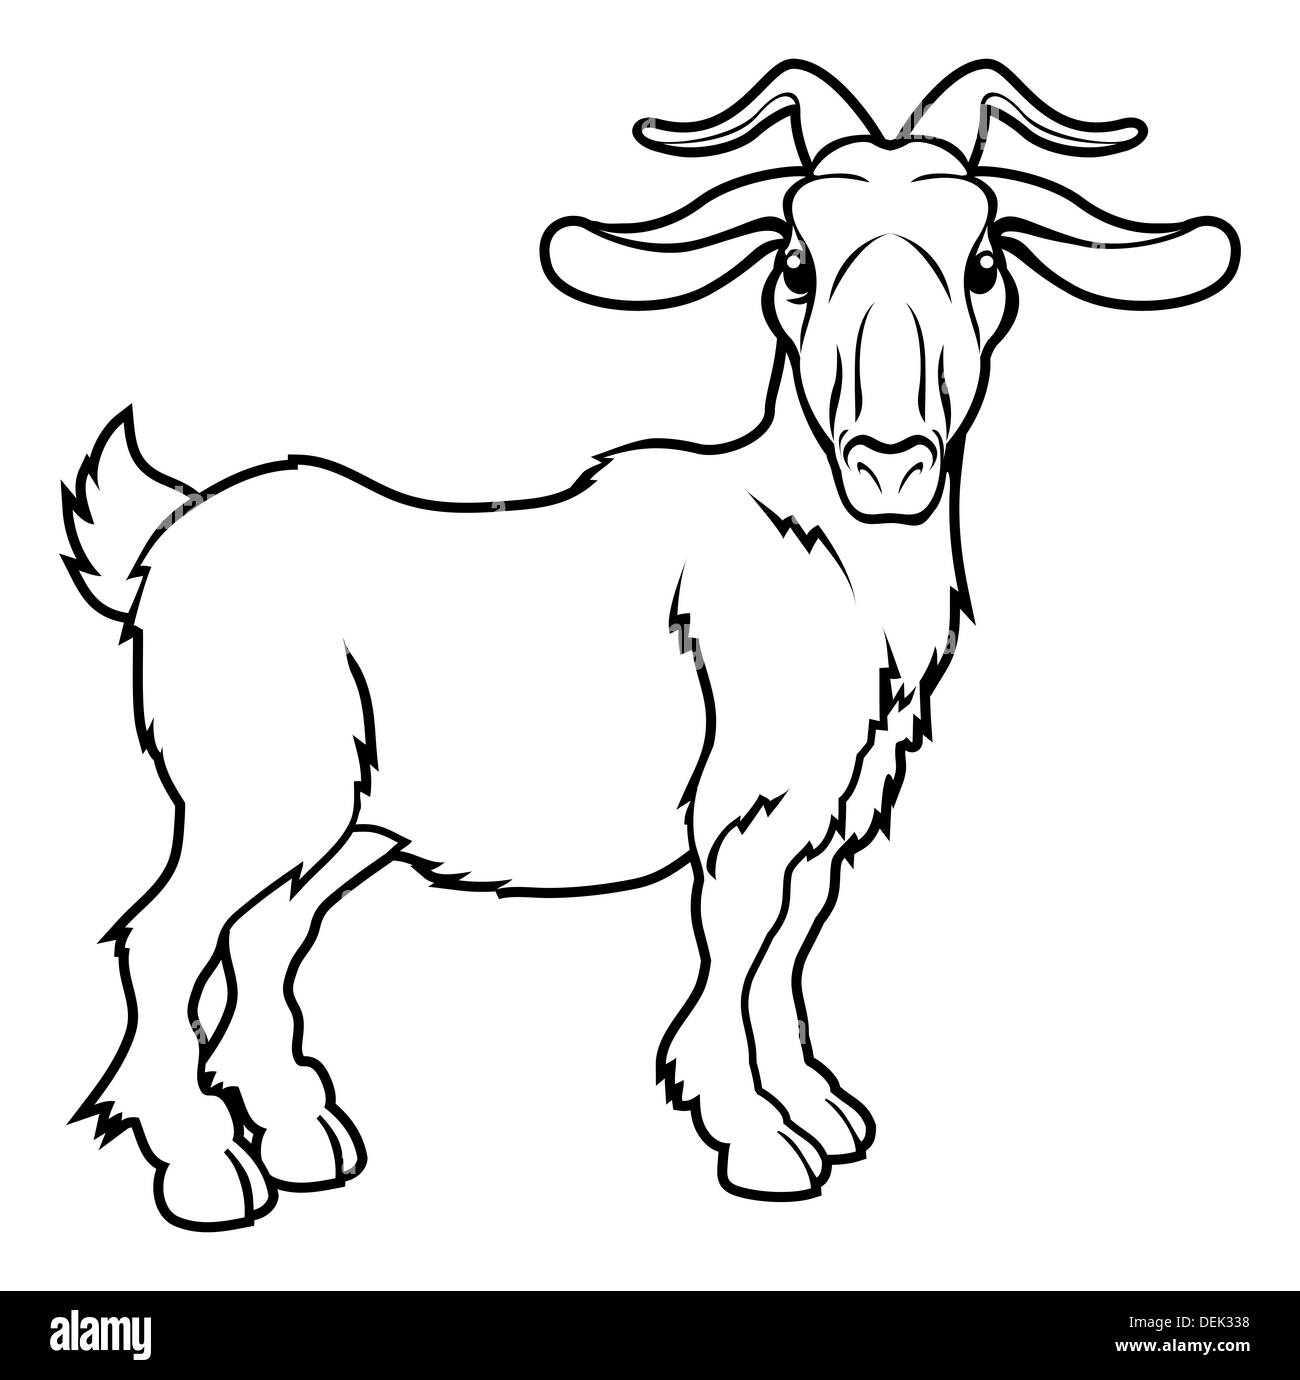 Una illustrazione di stilizzazione di una capra o ram forse un tatuaggio di capra Foto Stock